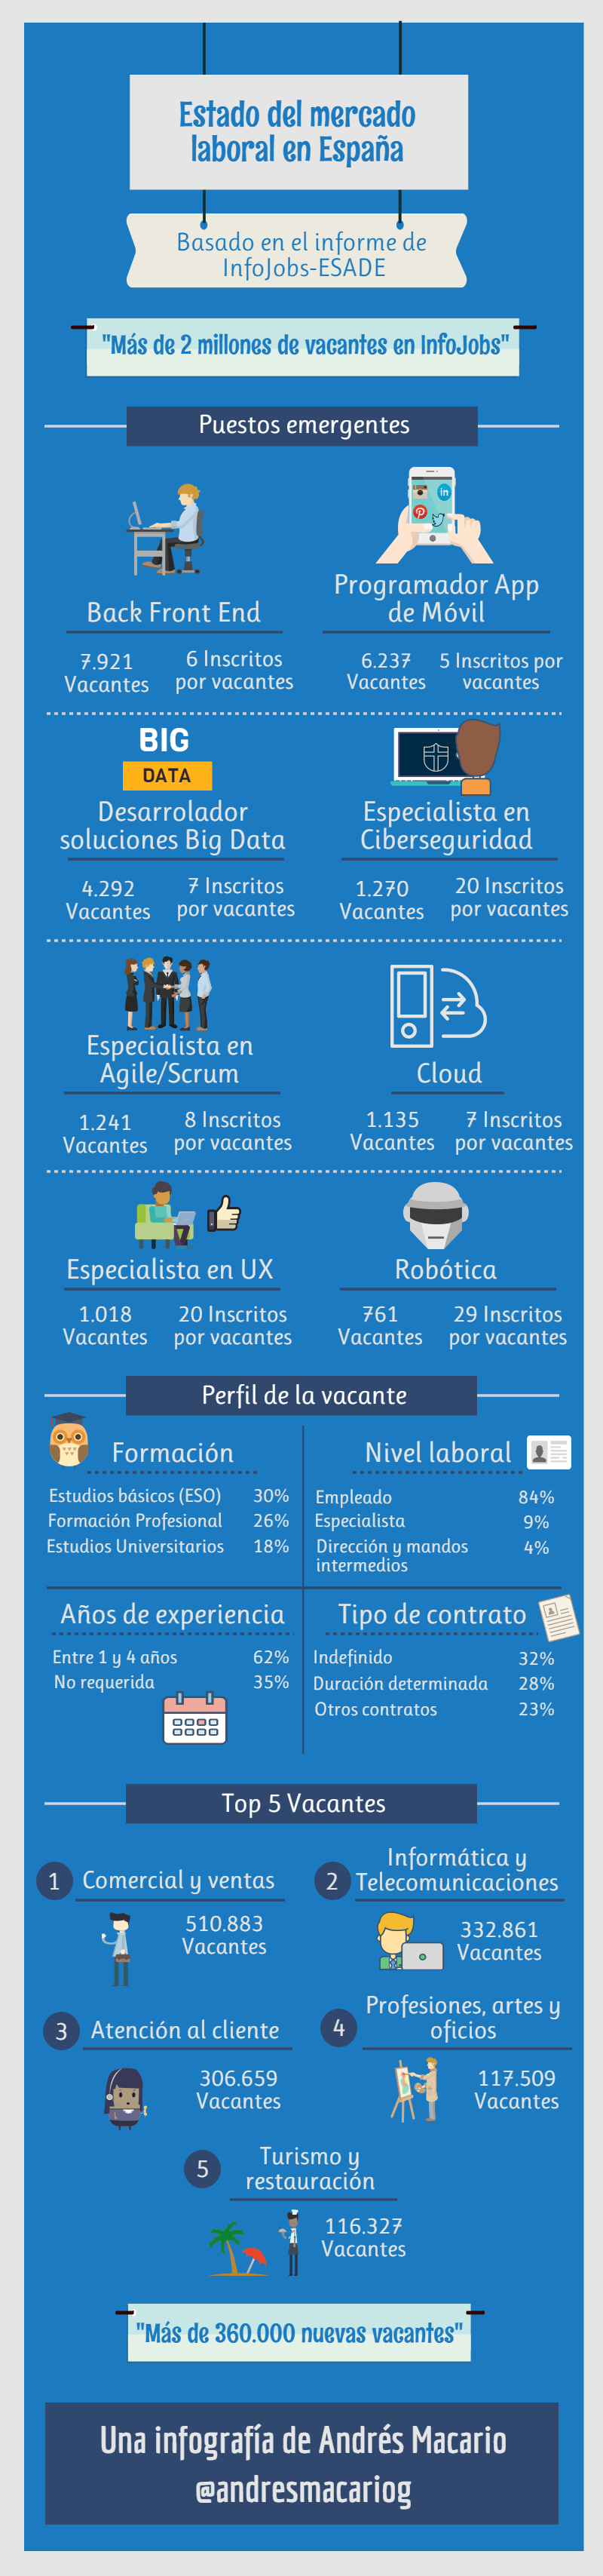 Estado del mercado laboral en España - Infojobs-ESADE | Infografía Andrés Macario